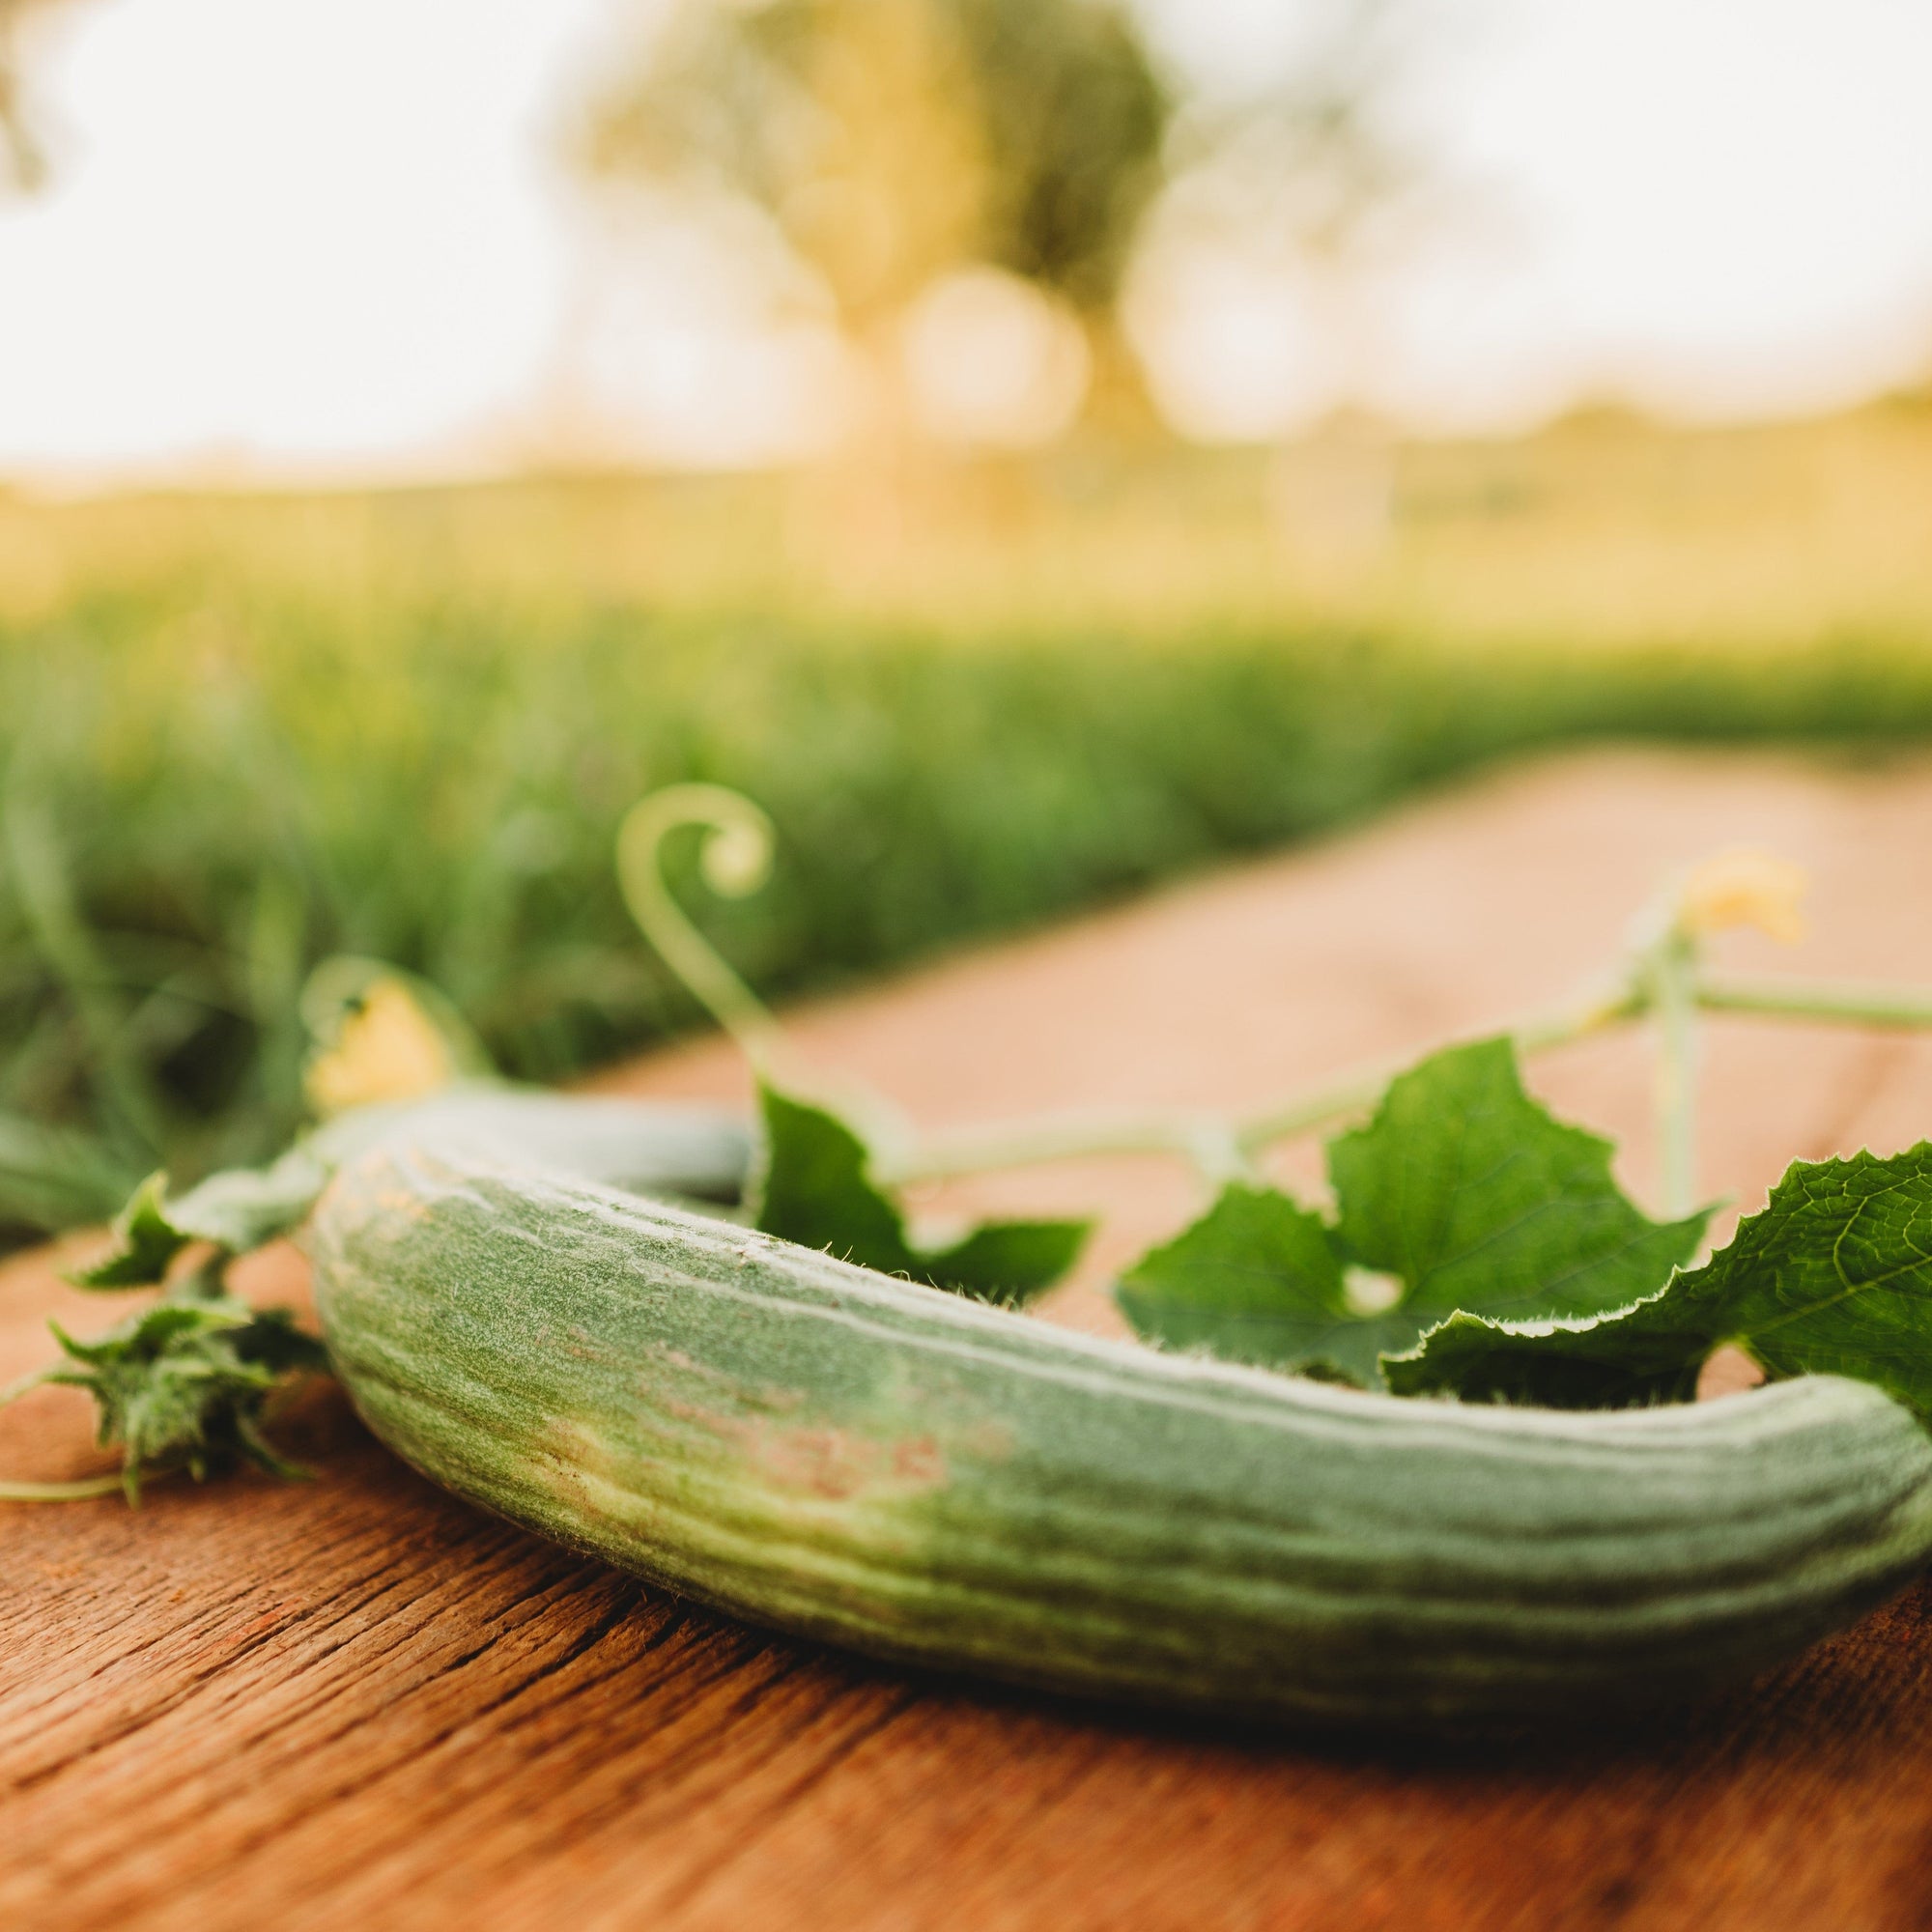 Armenian Cucumber (Yard Long Cucumber)